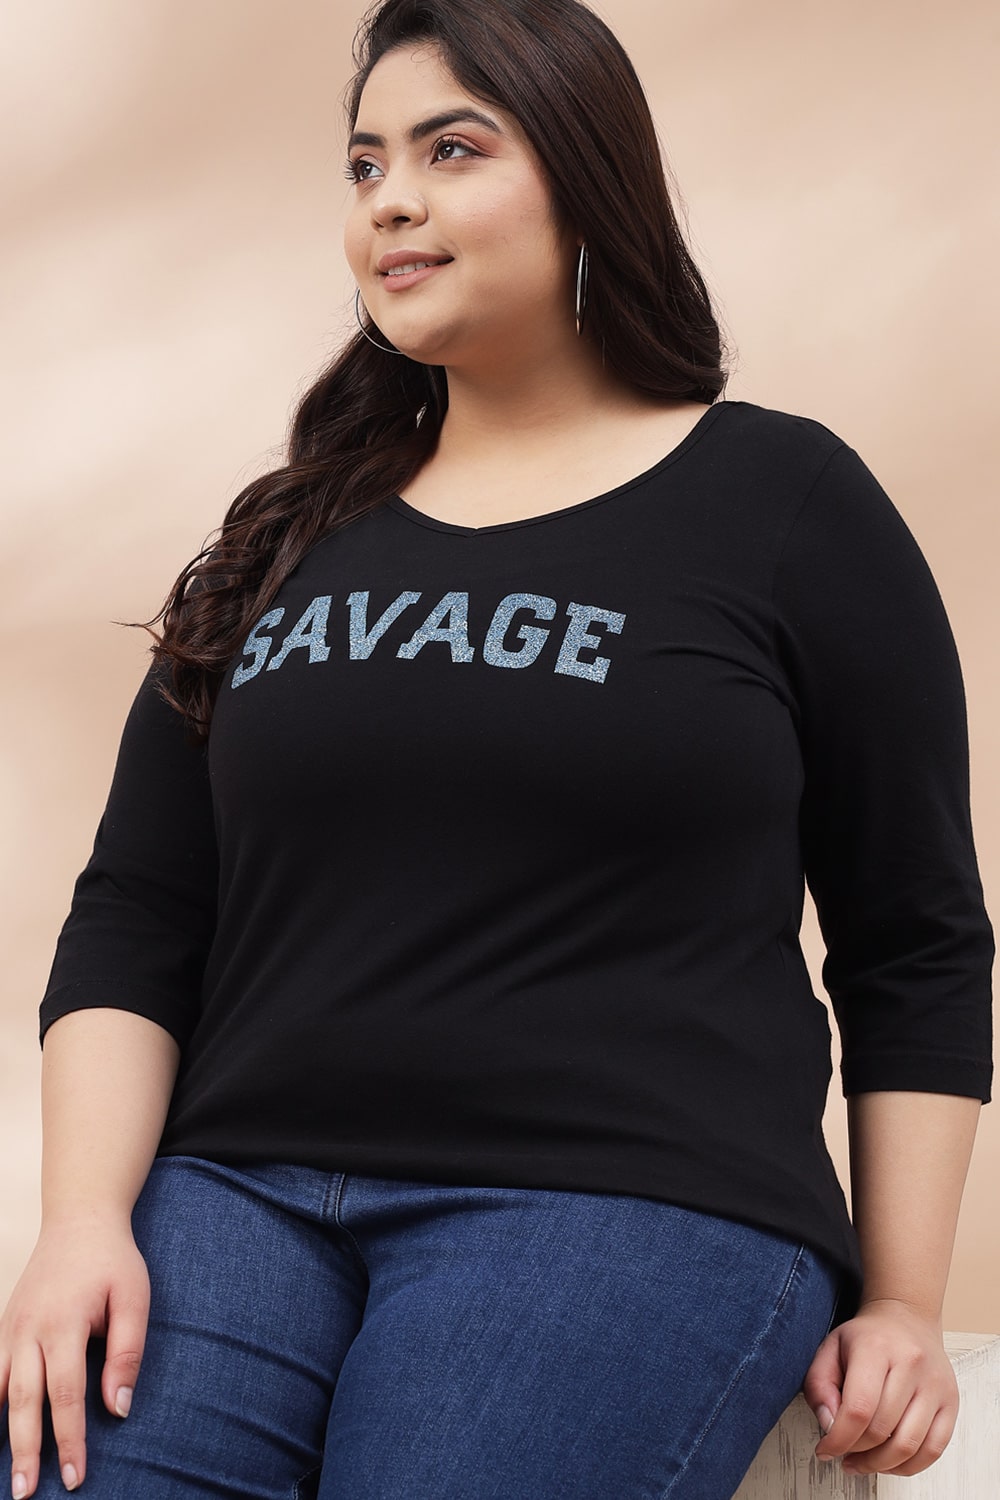 Savage Black Tshirt for Women